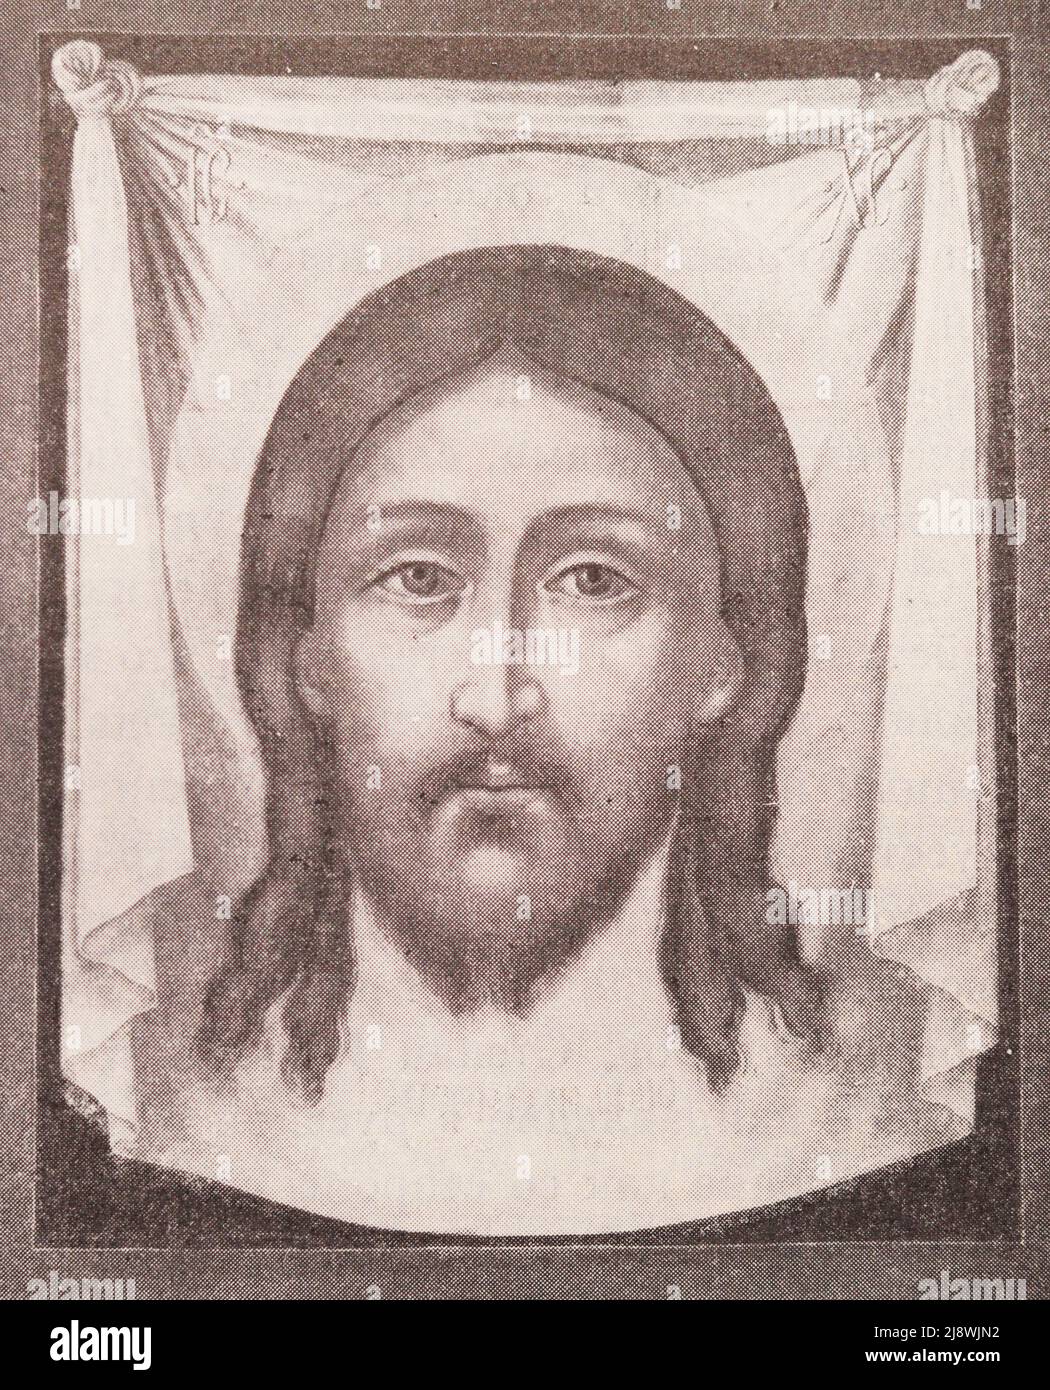 Icono 'Salvador no hecho por las manos' de Simon Ushakov. Foto de finales del siglo 19th. Foto de stock